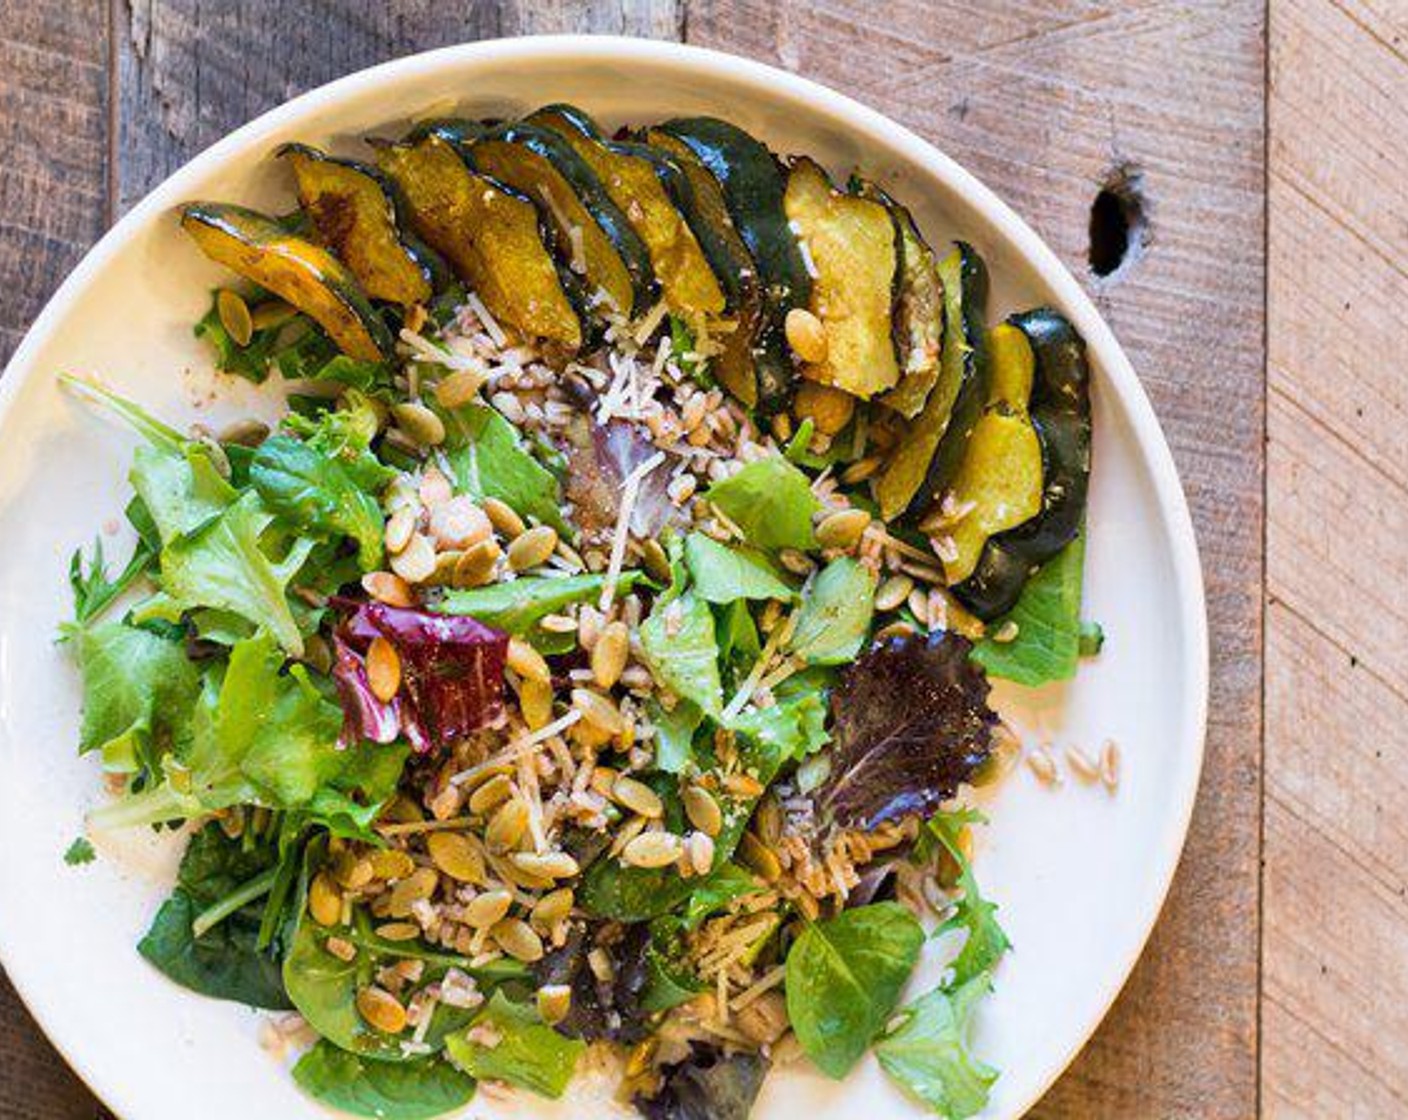 Roasted Acorn Squash and Farro Salad